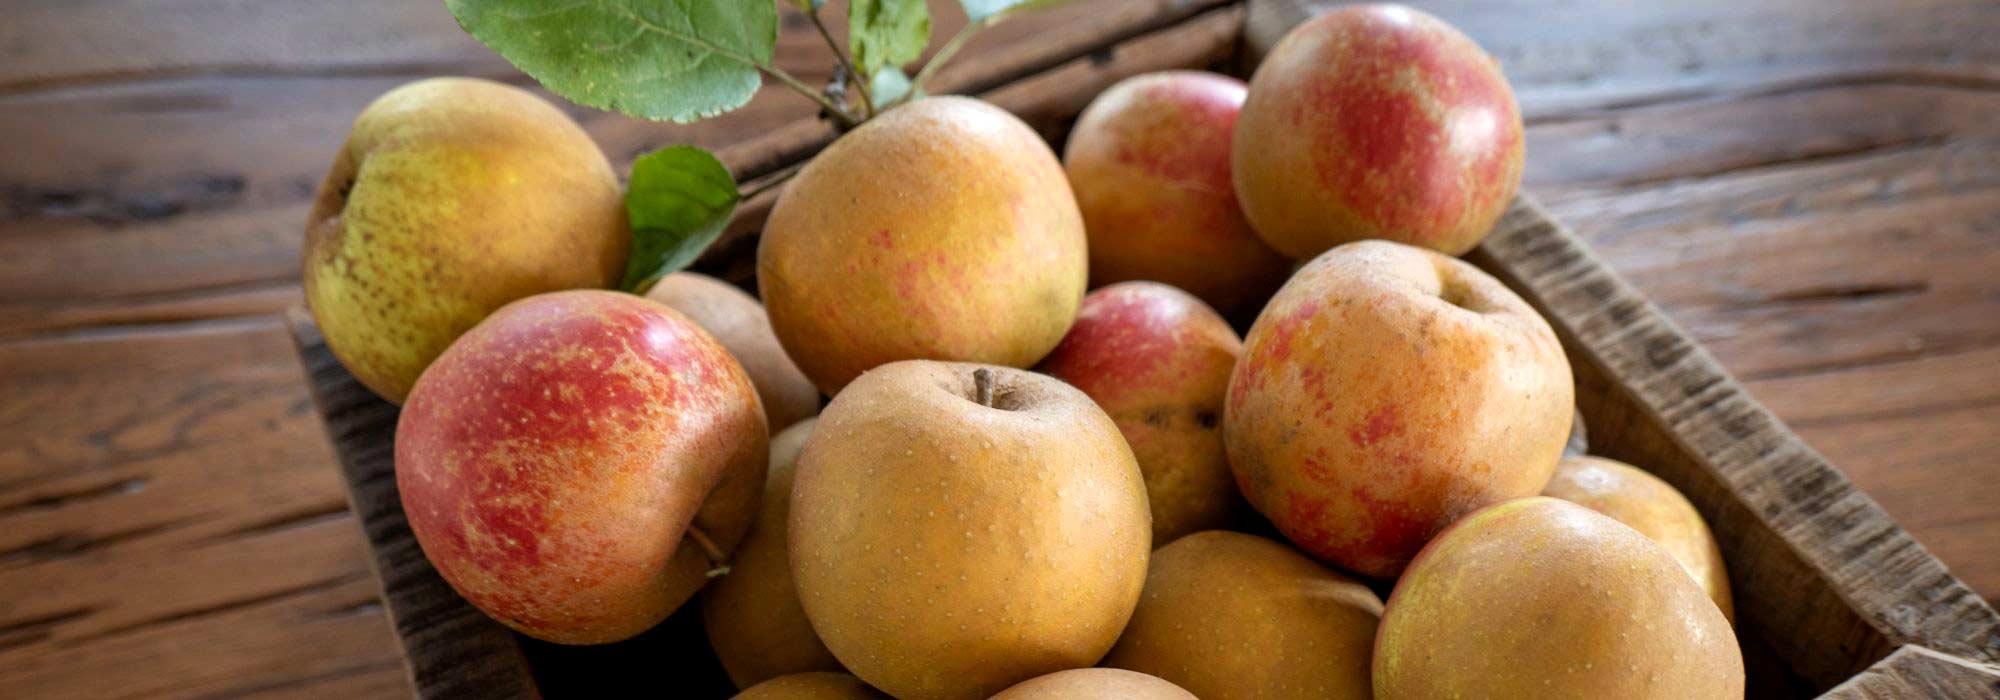 6 variétés de pommes tardives